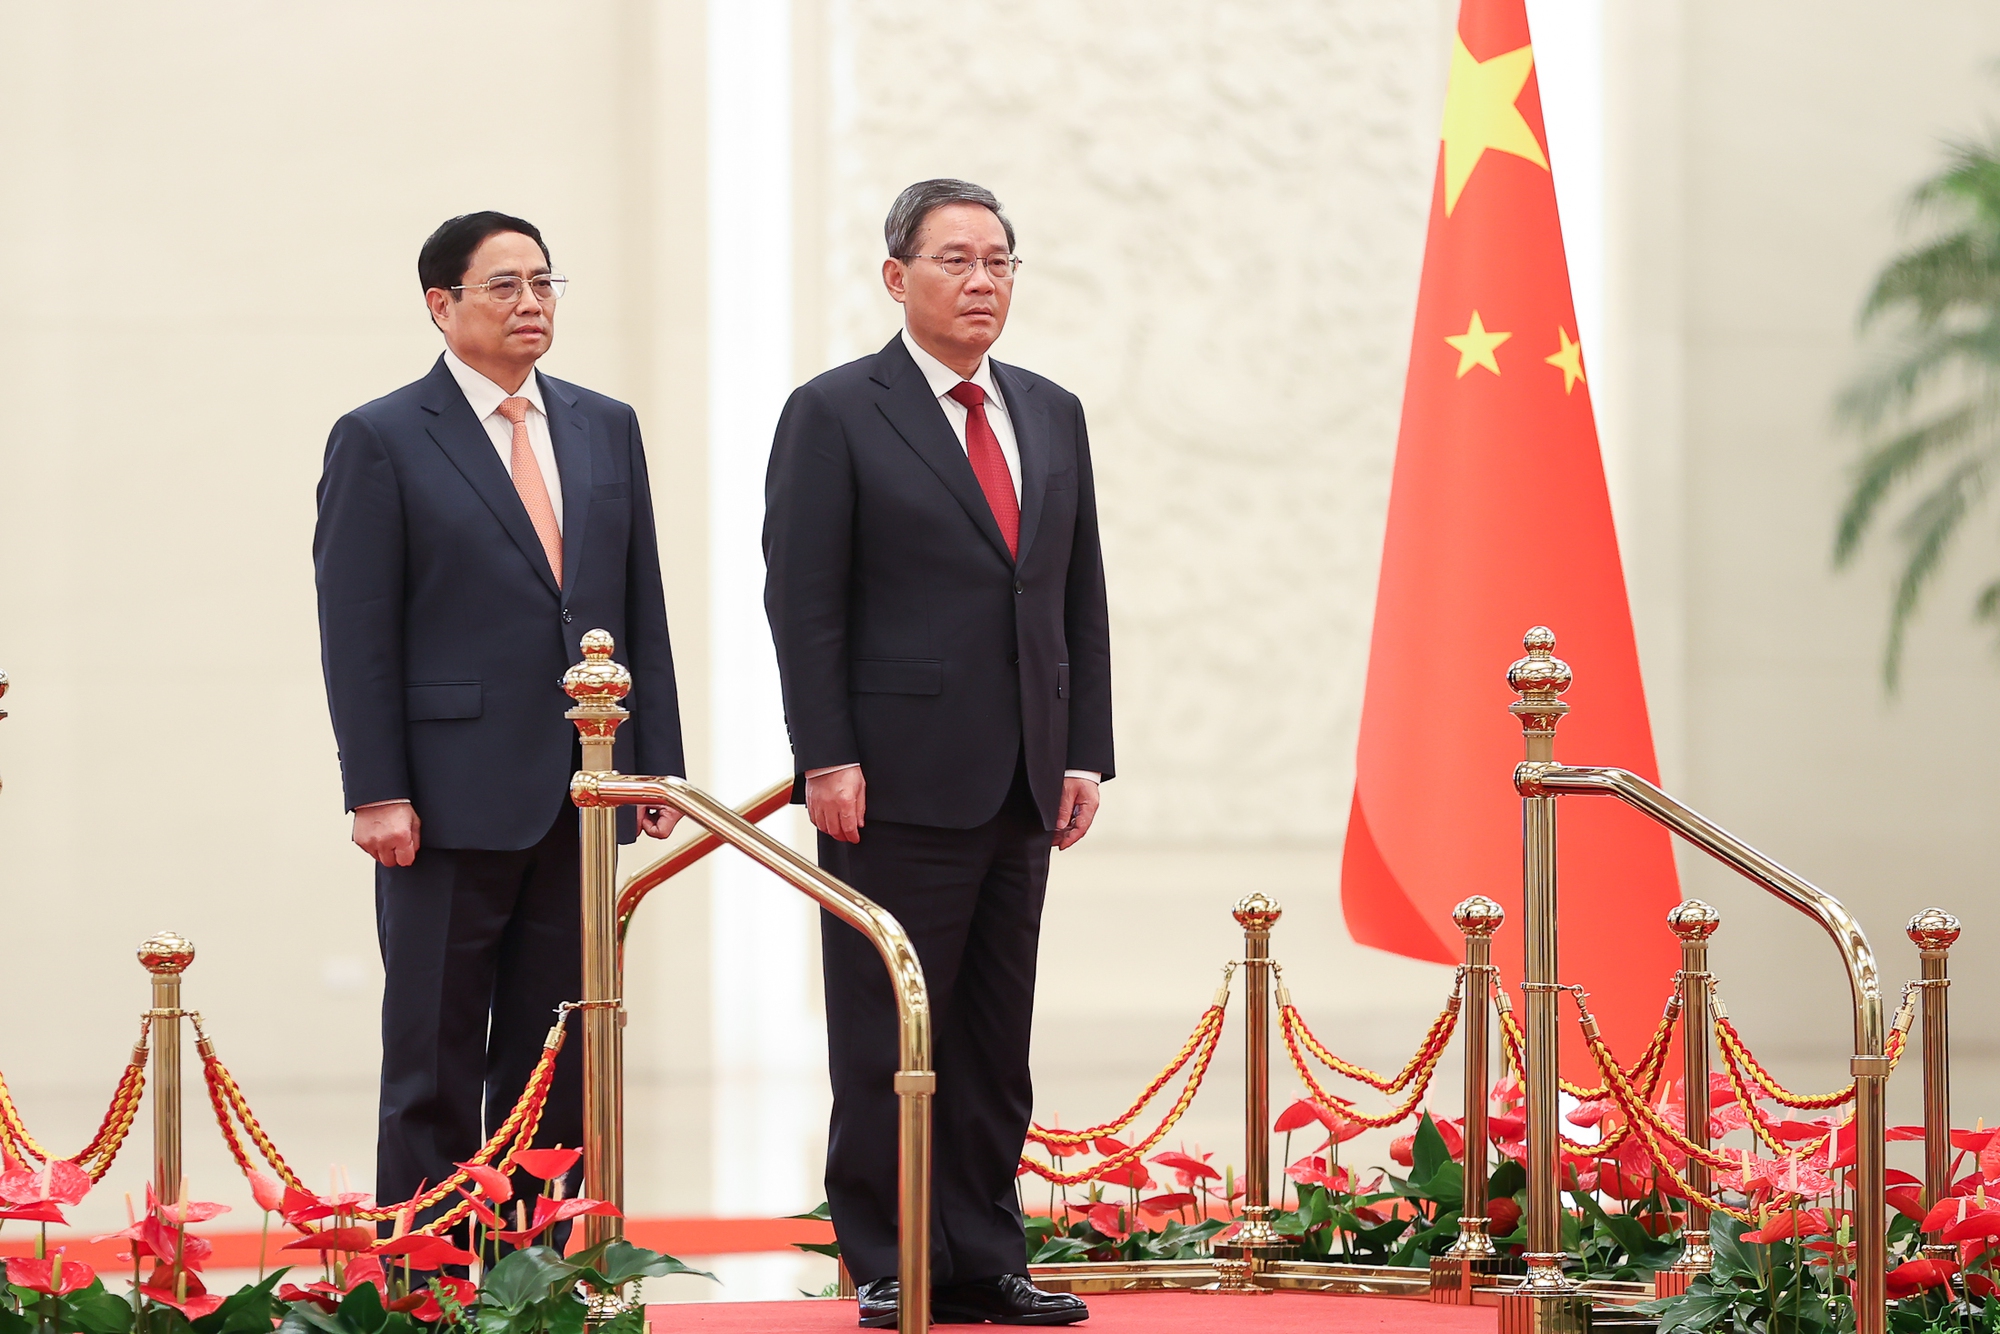 Chuyến thăm chính thức Trung Quốc của Thủ tướng Phạm Minh Chính diễn ra trong bối cảnh quan hệ Đối tác hợp tác chiến lược toàn diện Việt Nam - Trung Quốc đang duy trì xu thế phát triển và đạt nhiều kết quả tích cực - Ảnh: VGP/Nhật Bắc